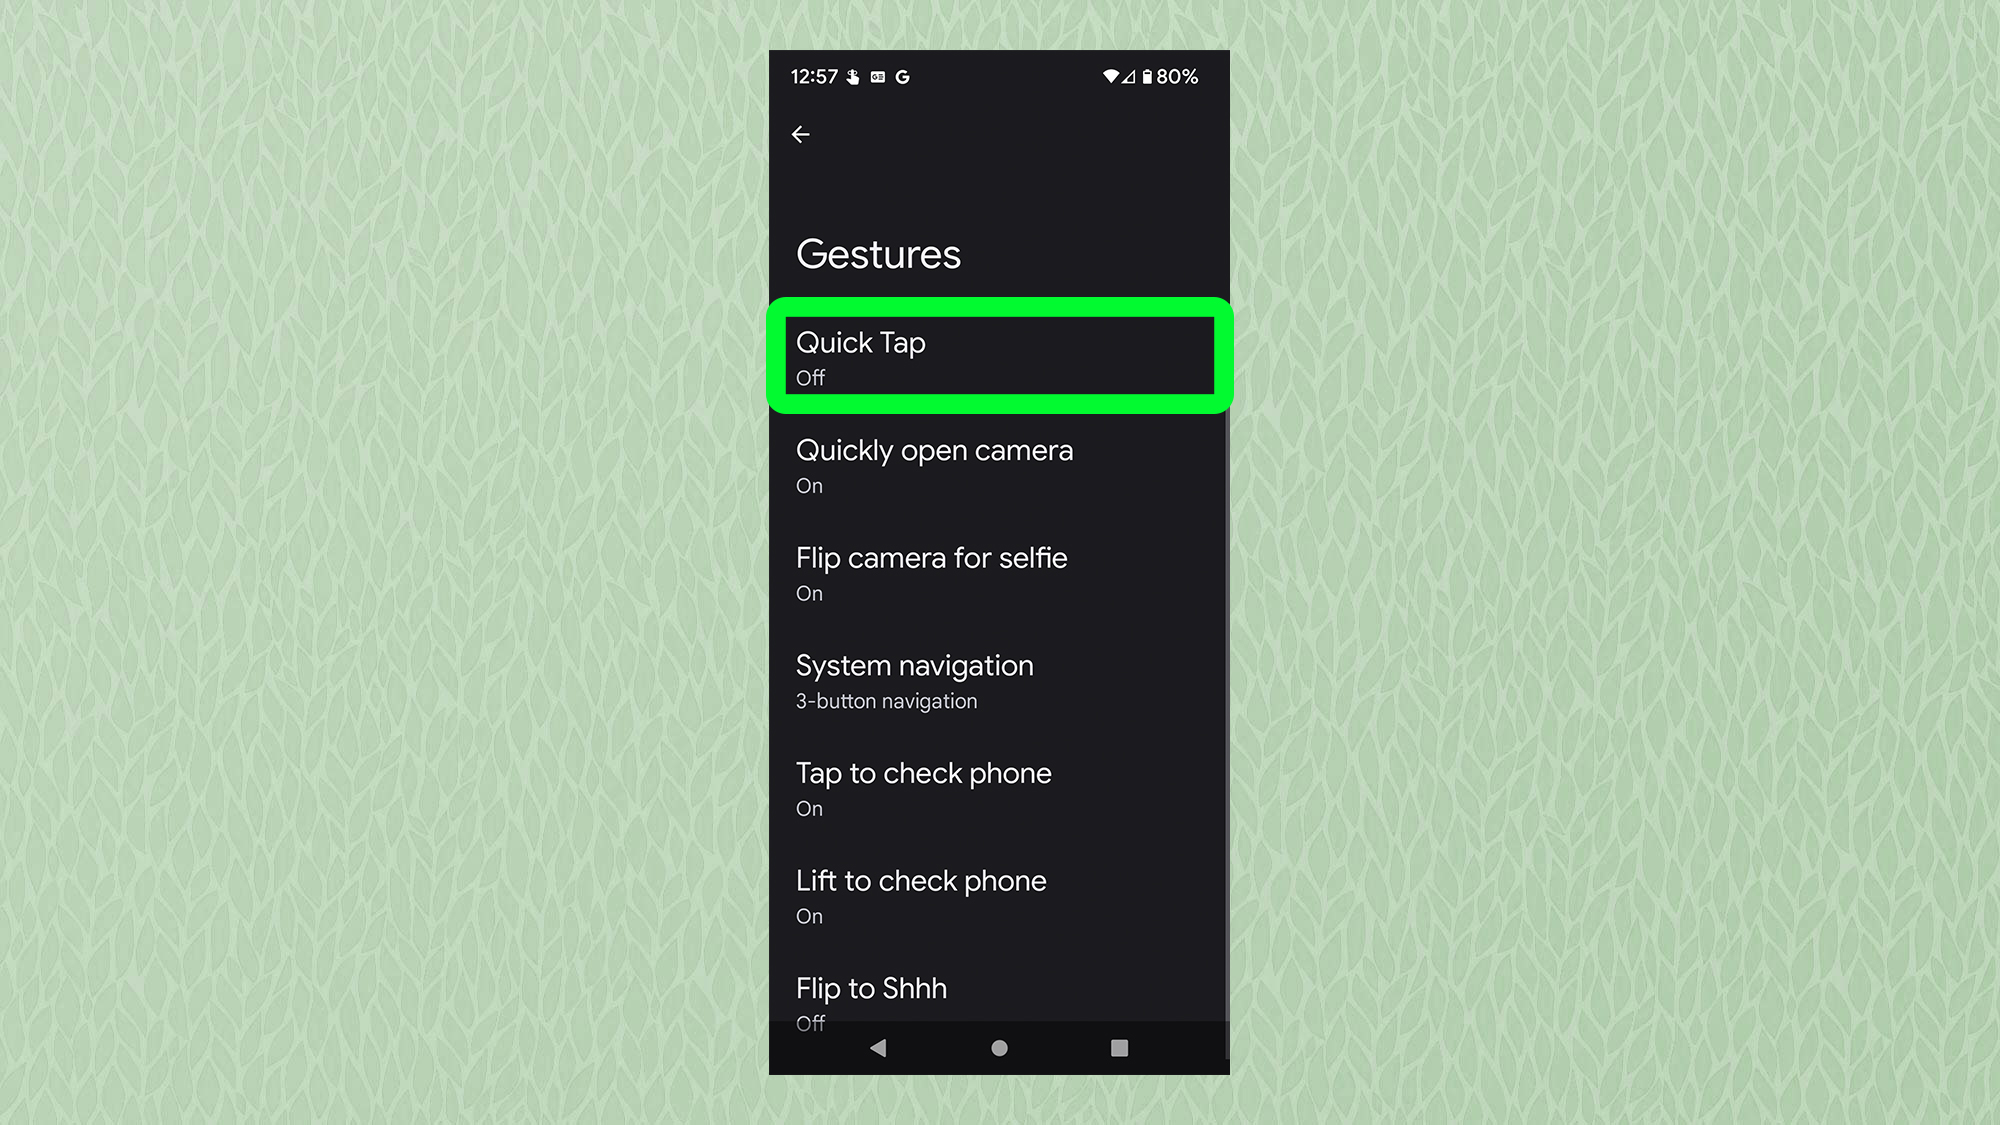 Снимок экрана с Android, показывающий меню жестов с выделенным Quick Tap